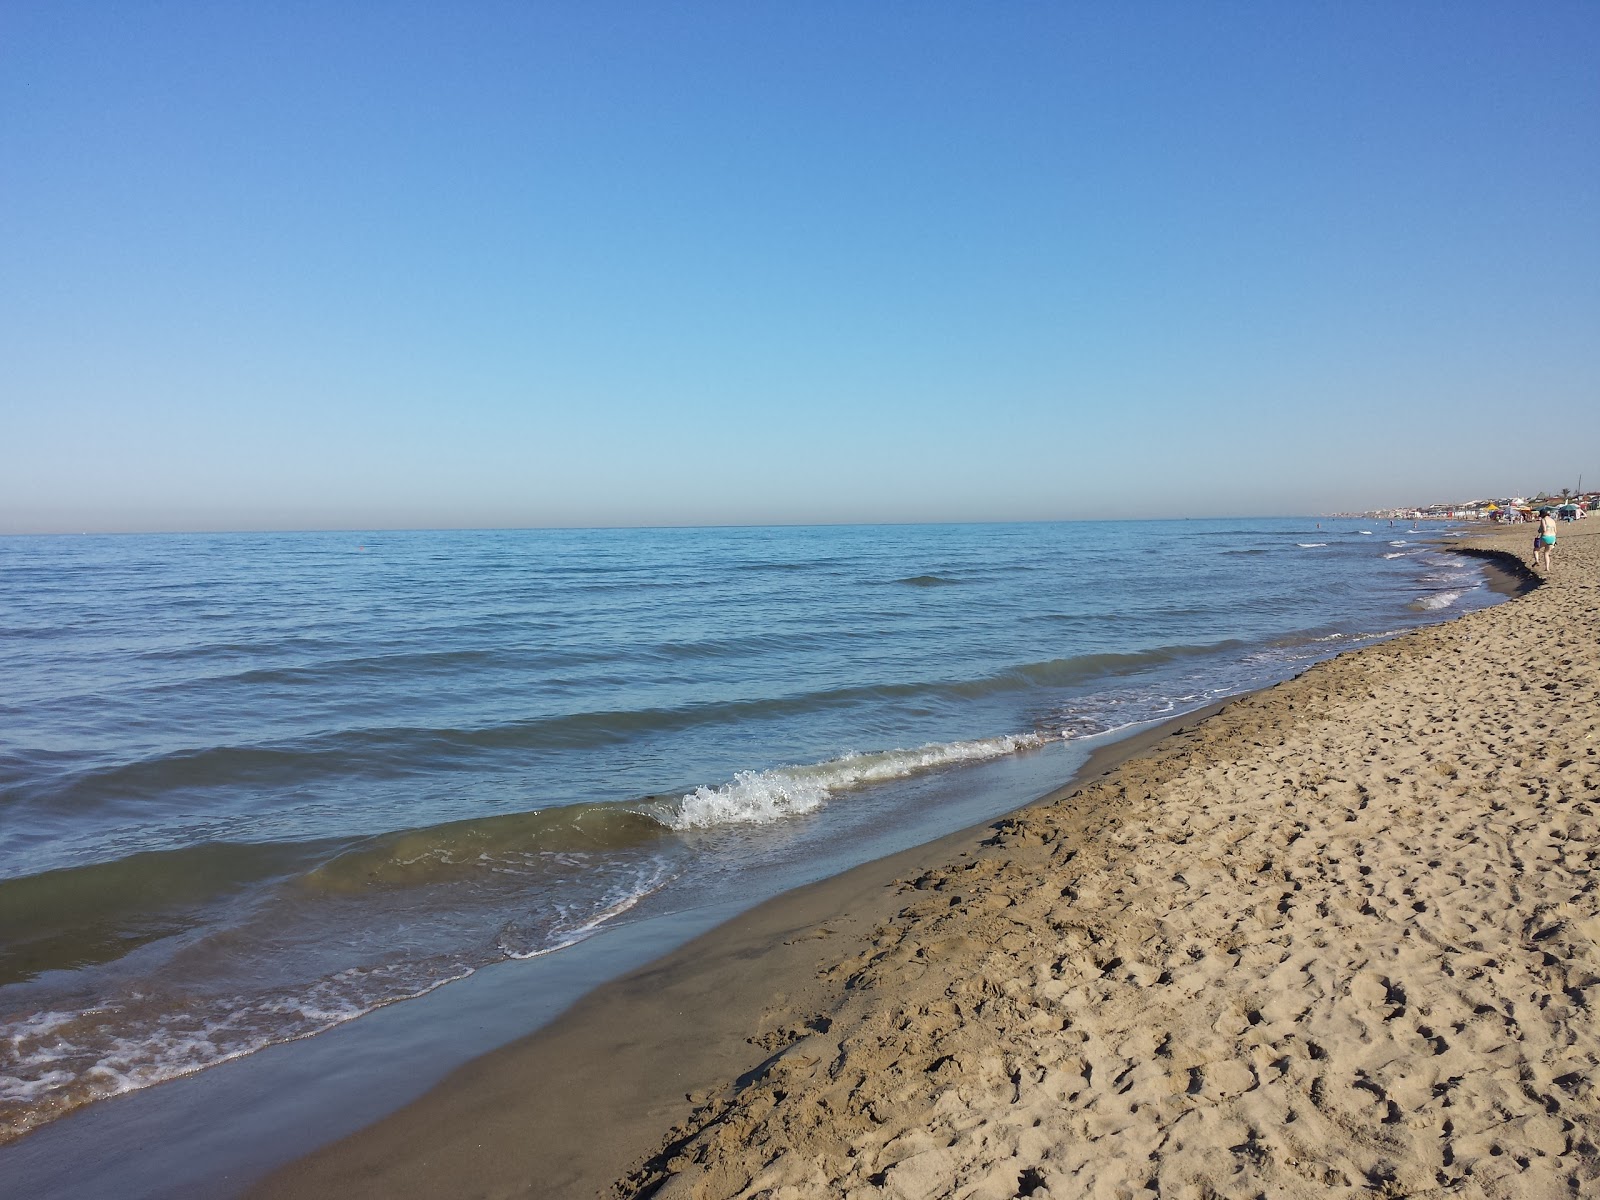 Fotografie cu Lupetta beach zonă de stațiune de pe plajă